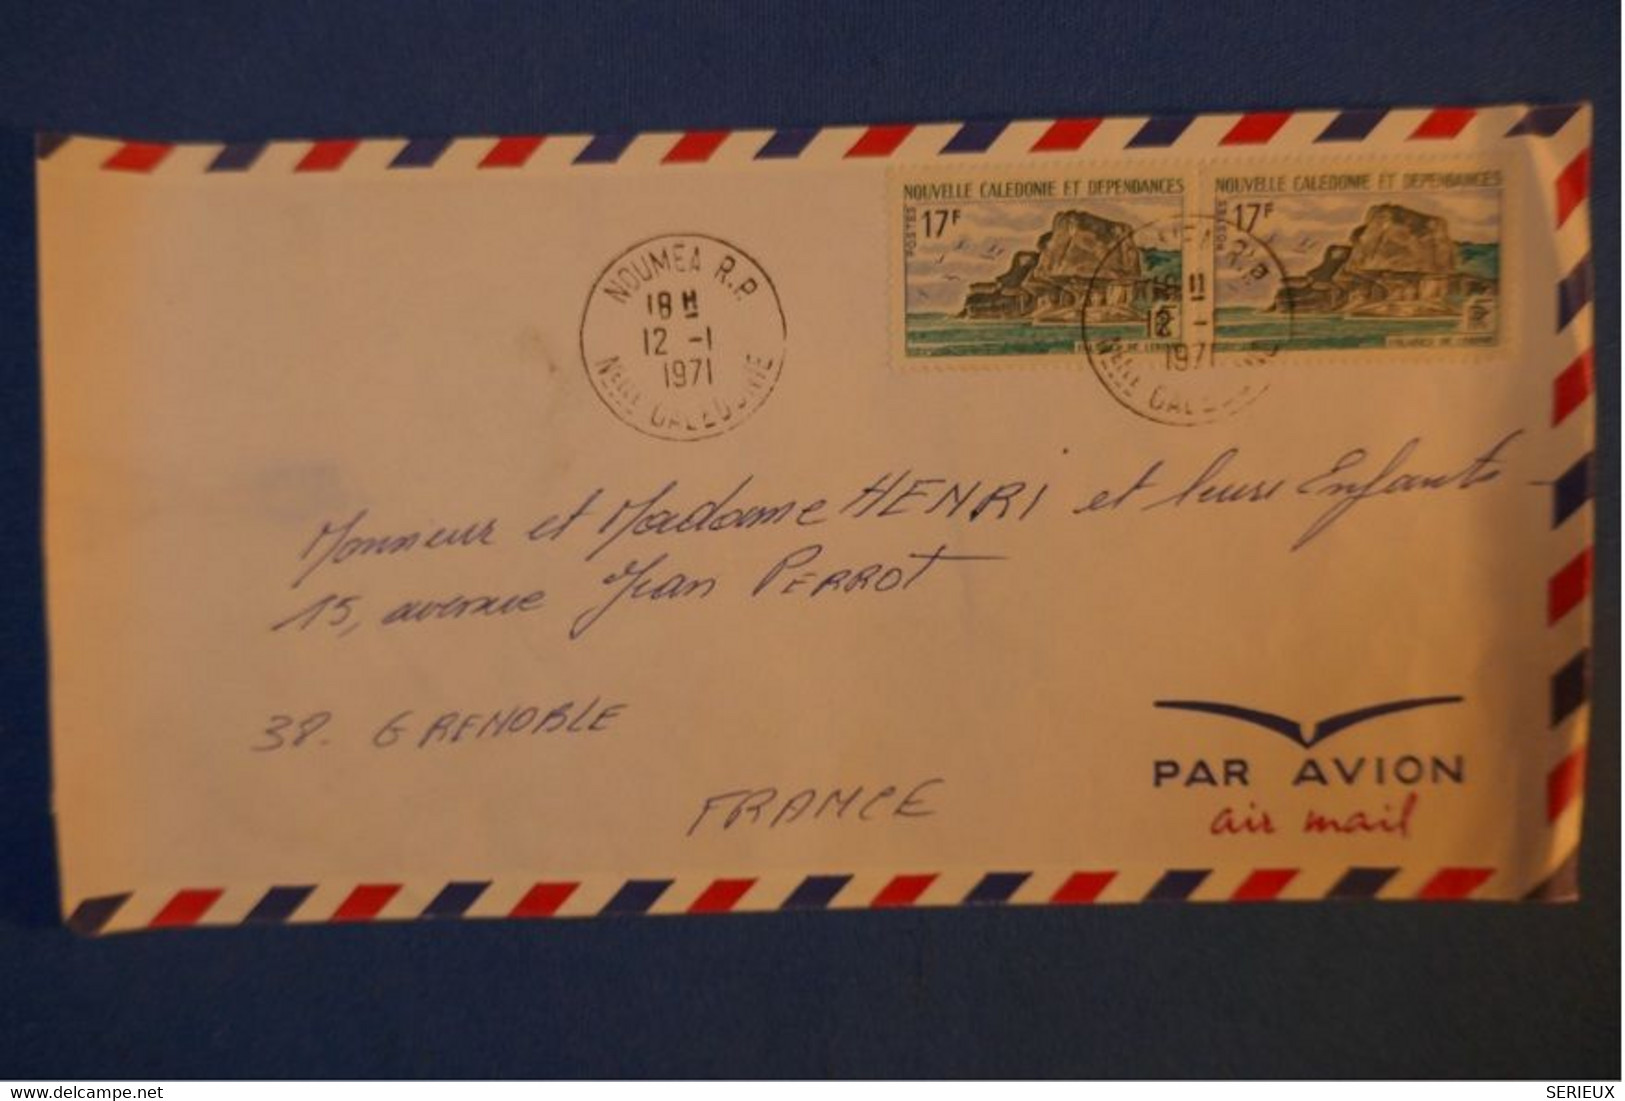 402 NOUVELLE CALEDONIE BELLE LETTRE 1971 NOUMEA PAR AVION A GRENOBLE FRANCE + PAIRE TIMBRES - Lettres & Documents